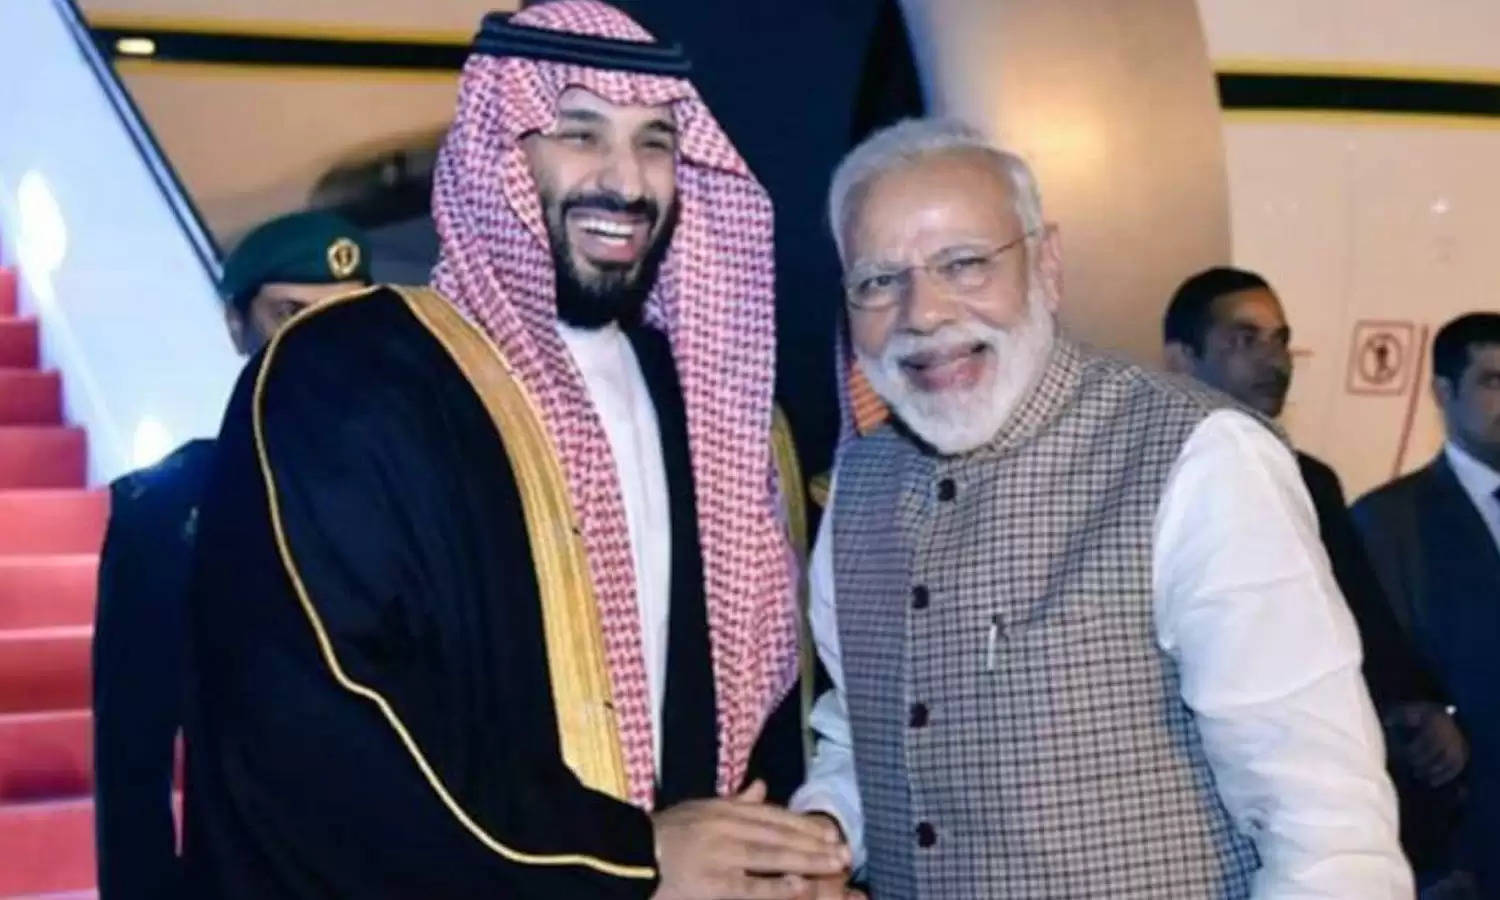 भारत के दौरे पर आ सकते हैं सऊदी क्राउन प्रिंस! प्रधानमंत्री मोदी ने भेजा न्योता